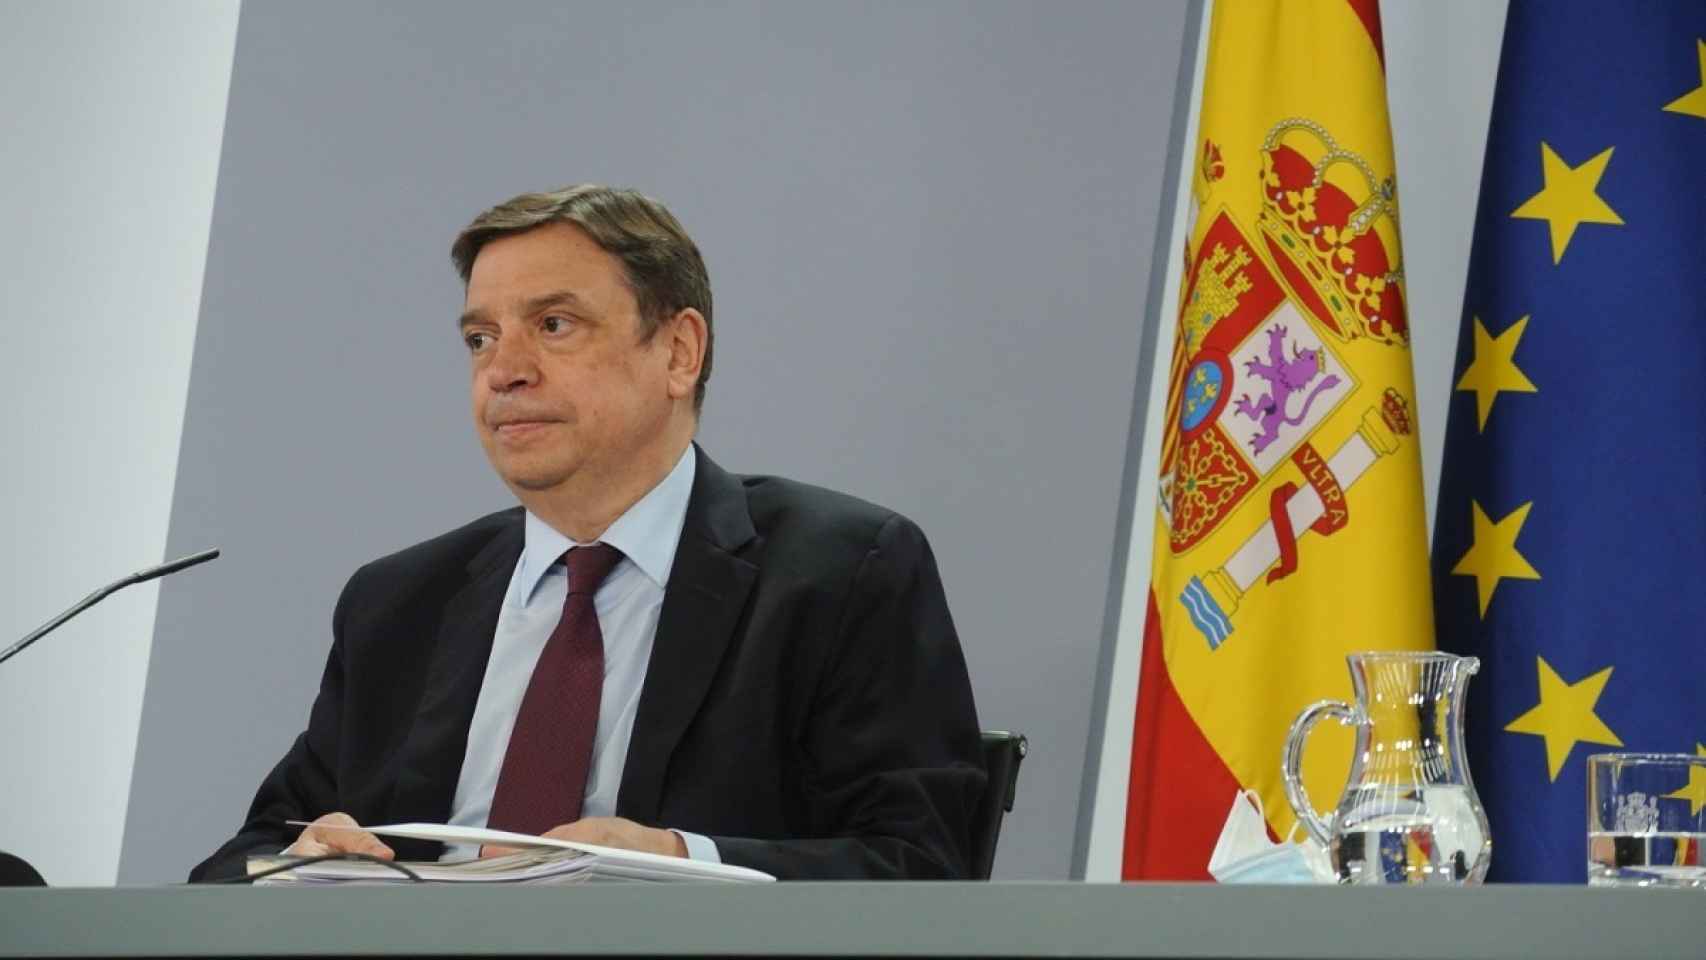 El ministro de Agricultura, Luis Planas.